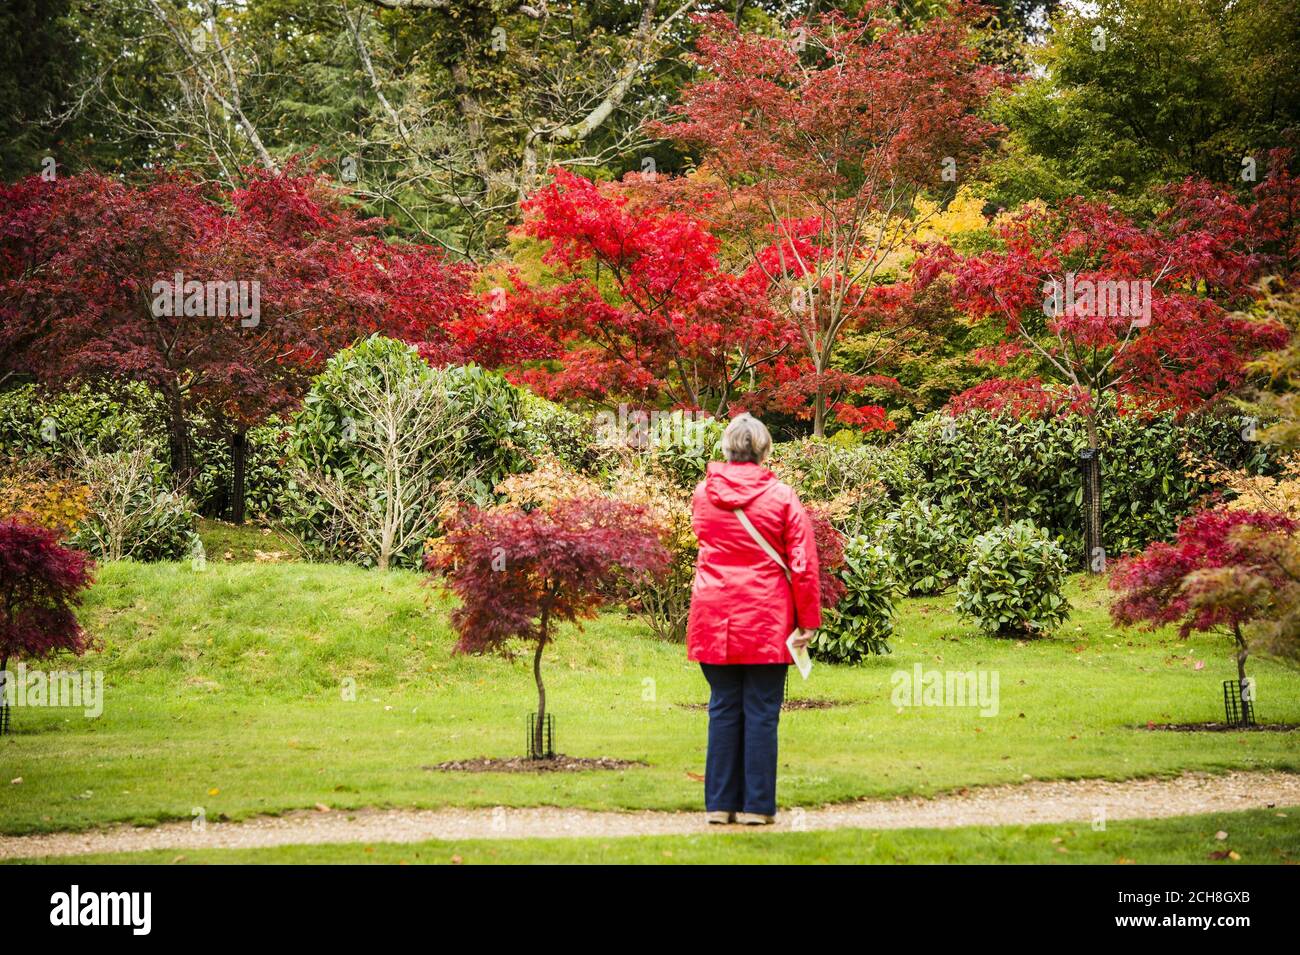 Una donna si ferma per ammirare gli spettacolari alberi rossi nella radura Acer presso i giardini della National Trust Kingston Lacy House, dove lunghe giornate di tempo luminoso e soleggiato per tutto il mese di ottobre hanno portato a un drammatico cambiamento di foglie e colori che creano una spettacolare esposizione autunnale. Foto Stock